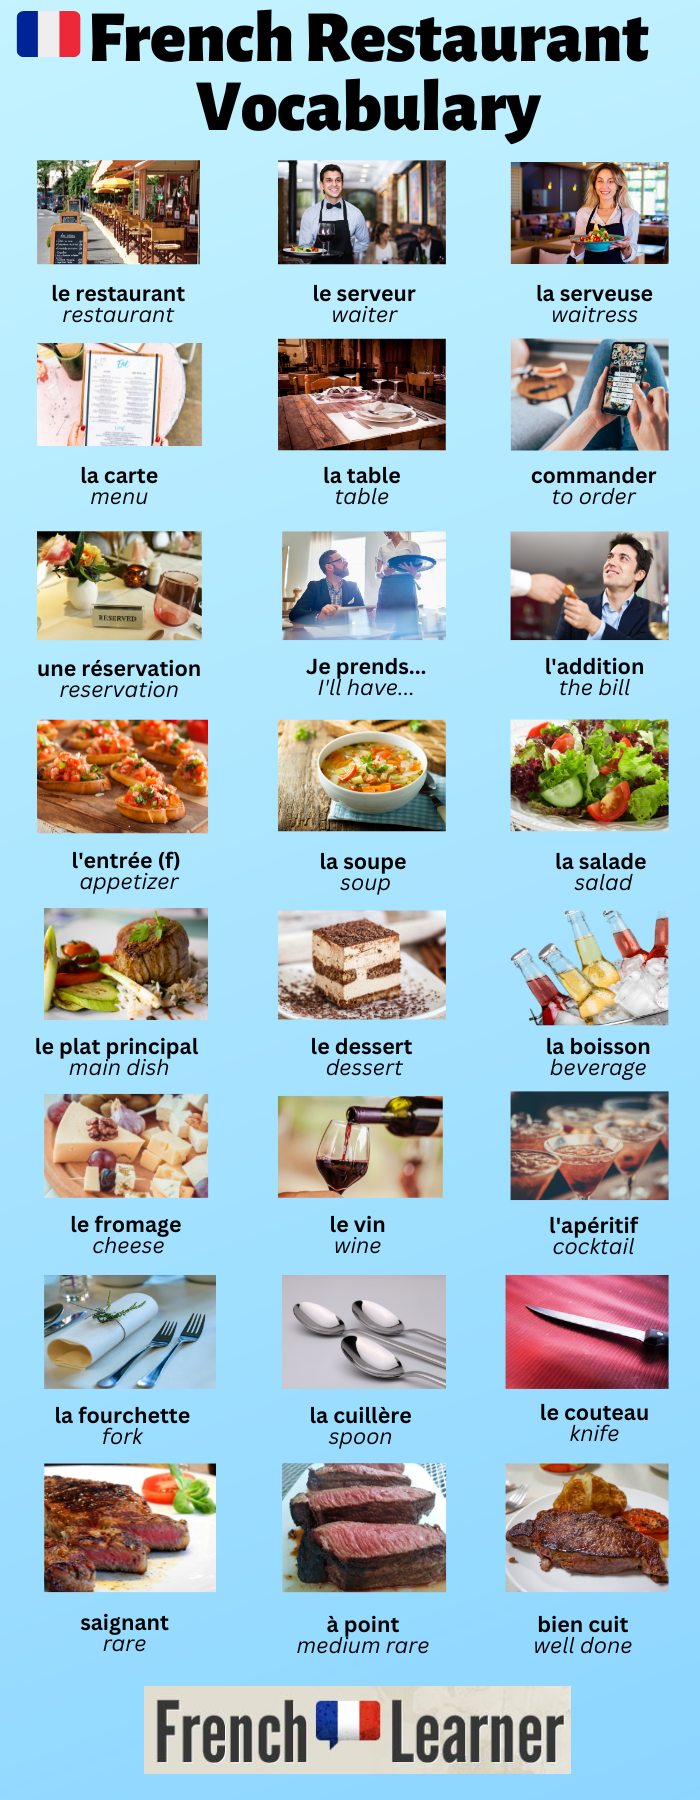 French restaurant vocabulary